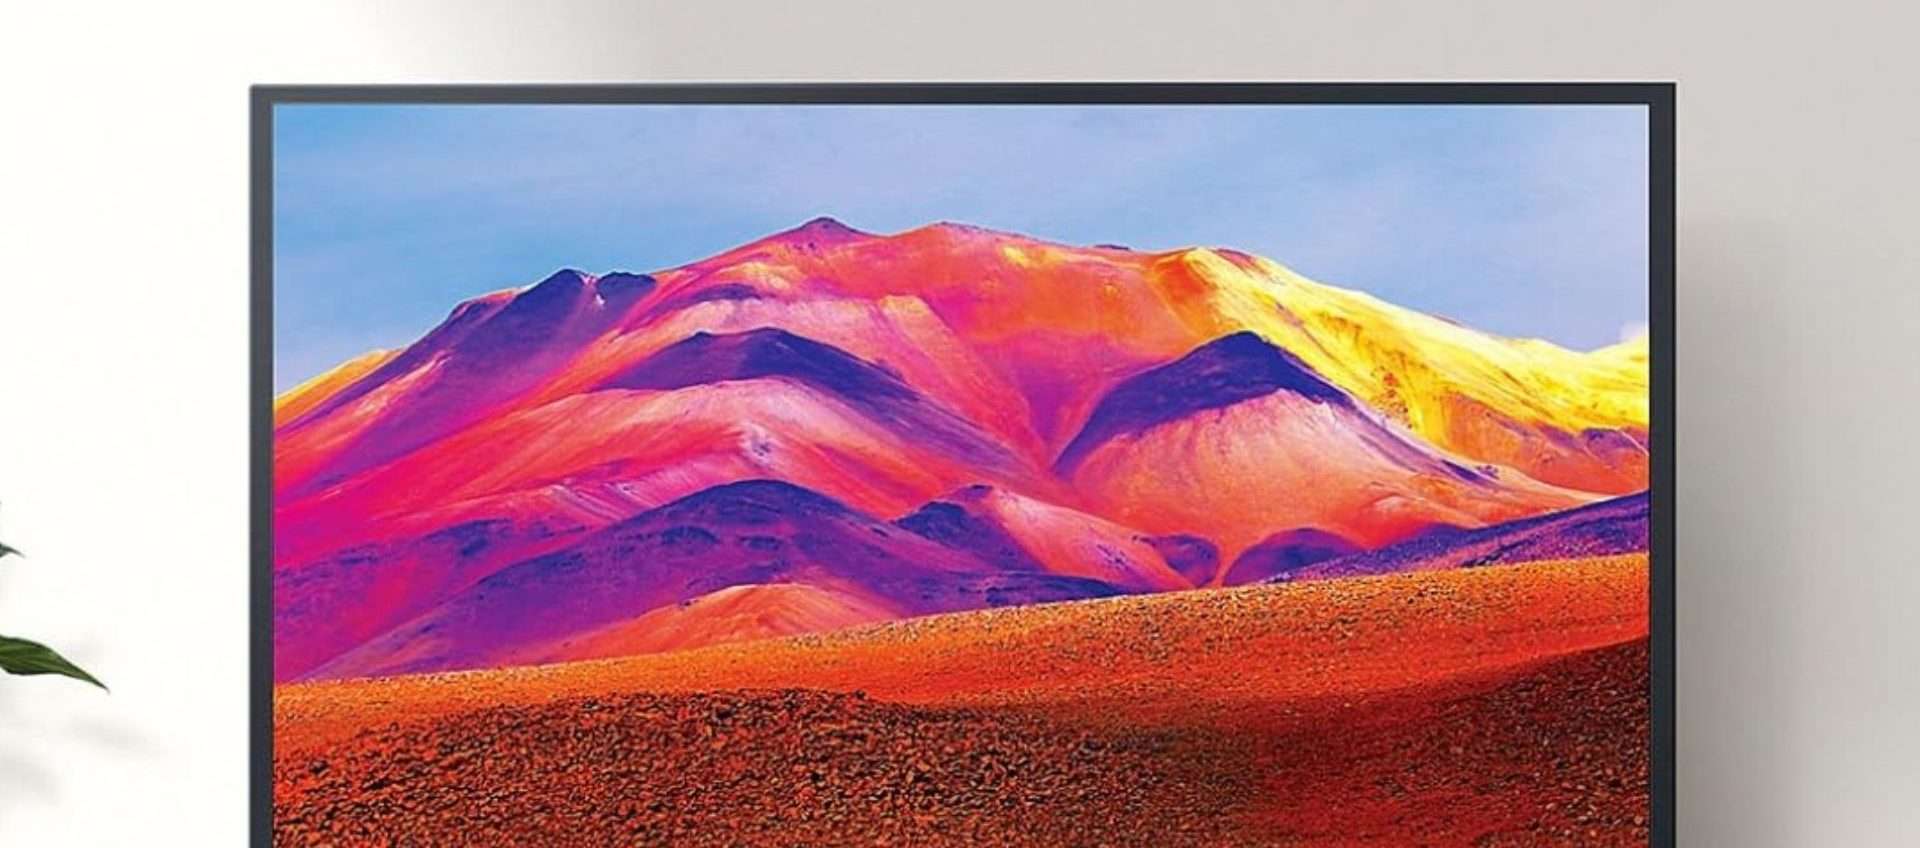 Smart TV della Samsung in offerta su Amazon ad un PREZZO BOMBA